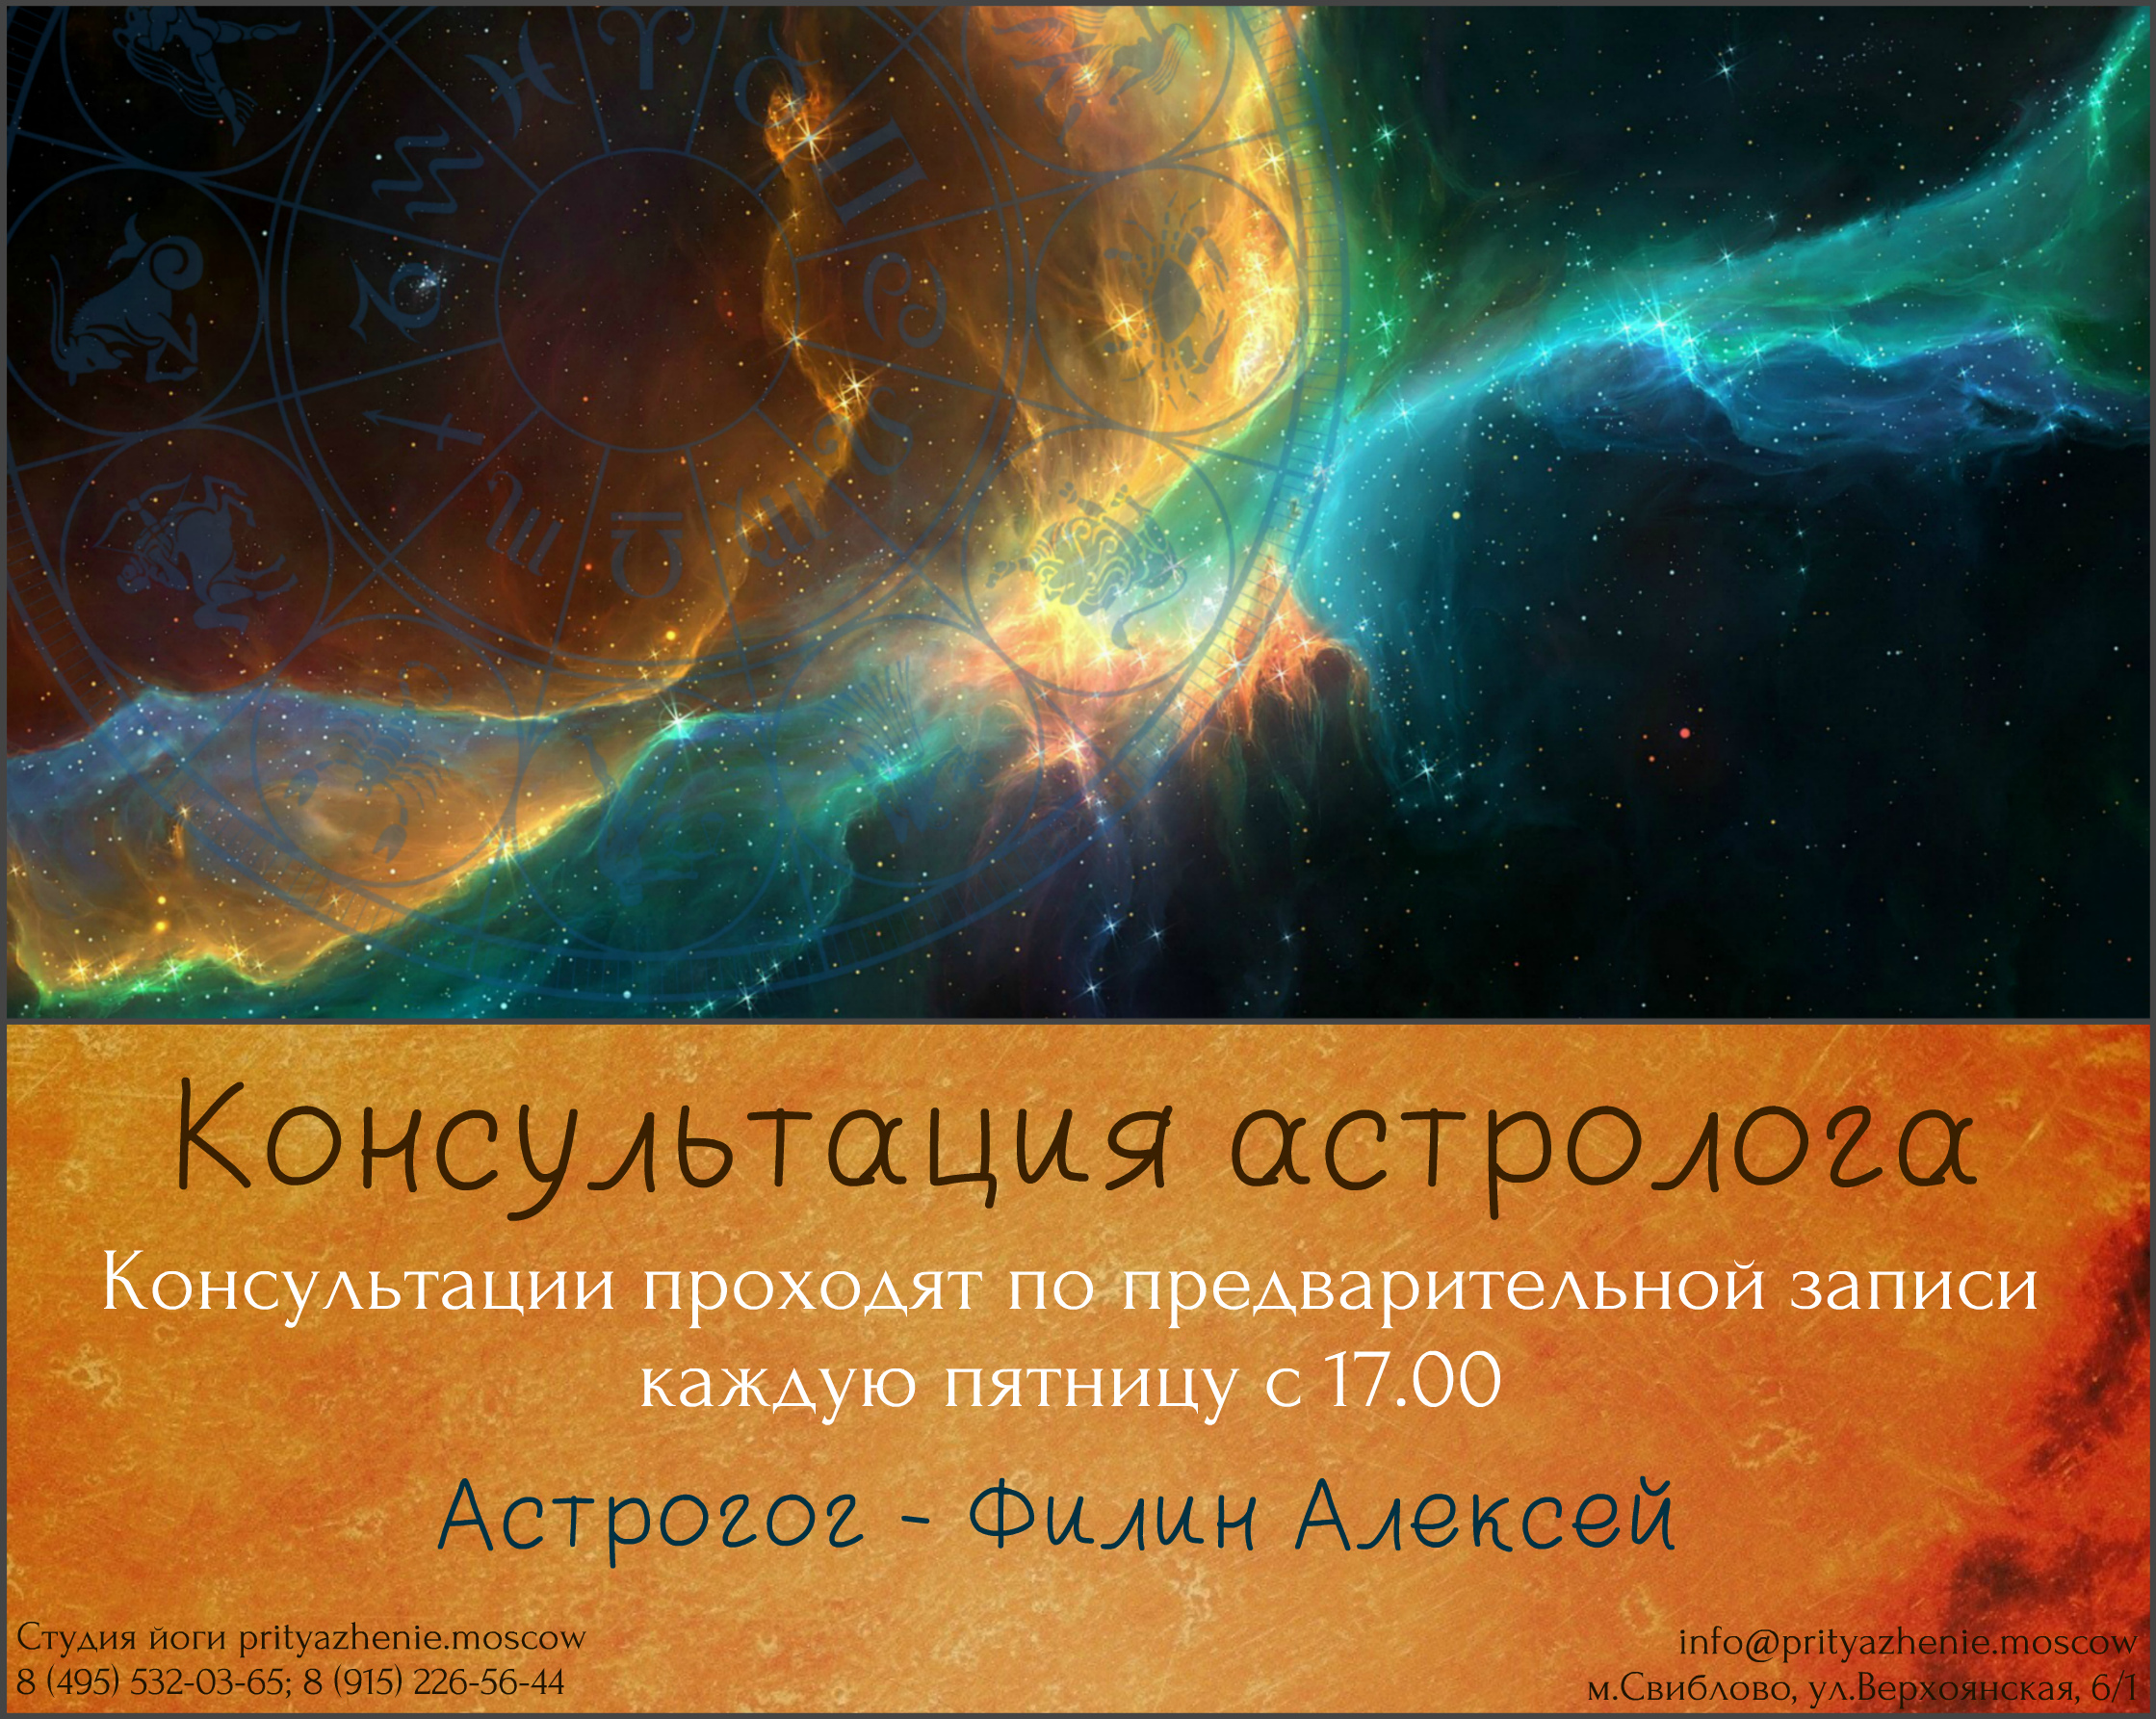 Реклама Астролога